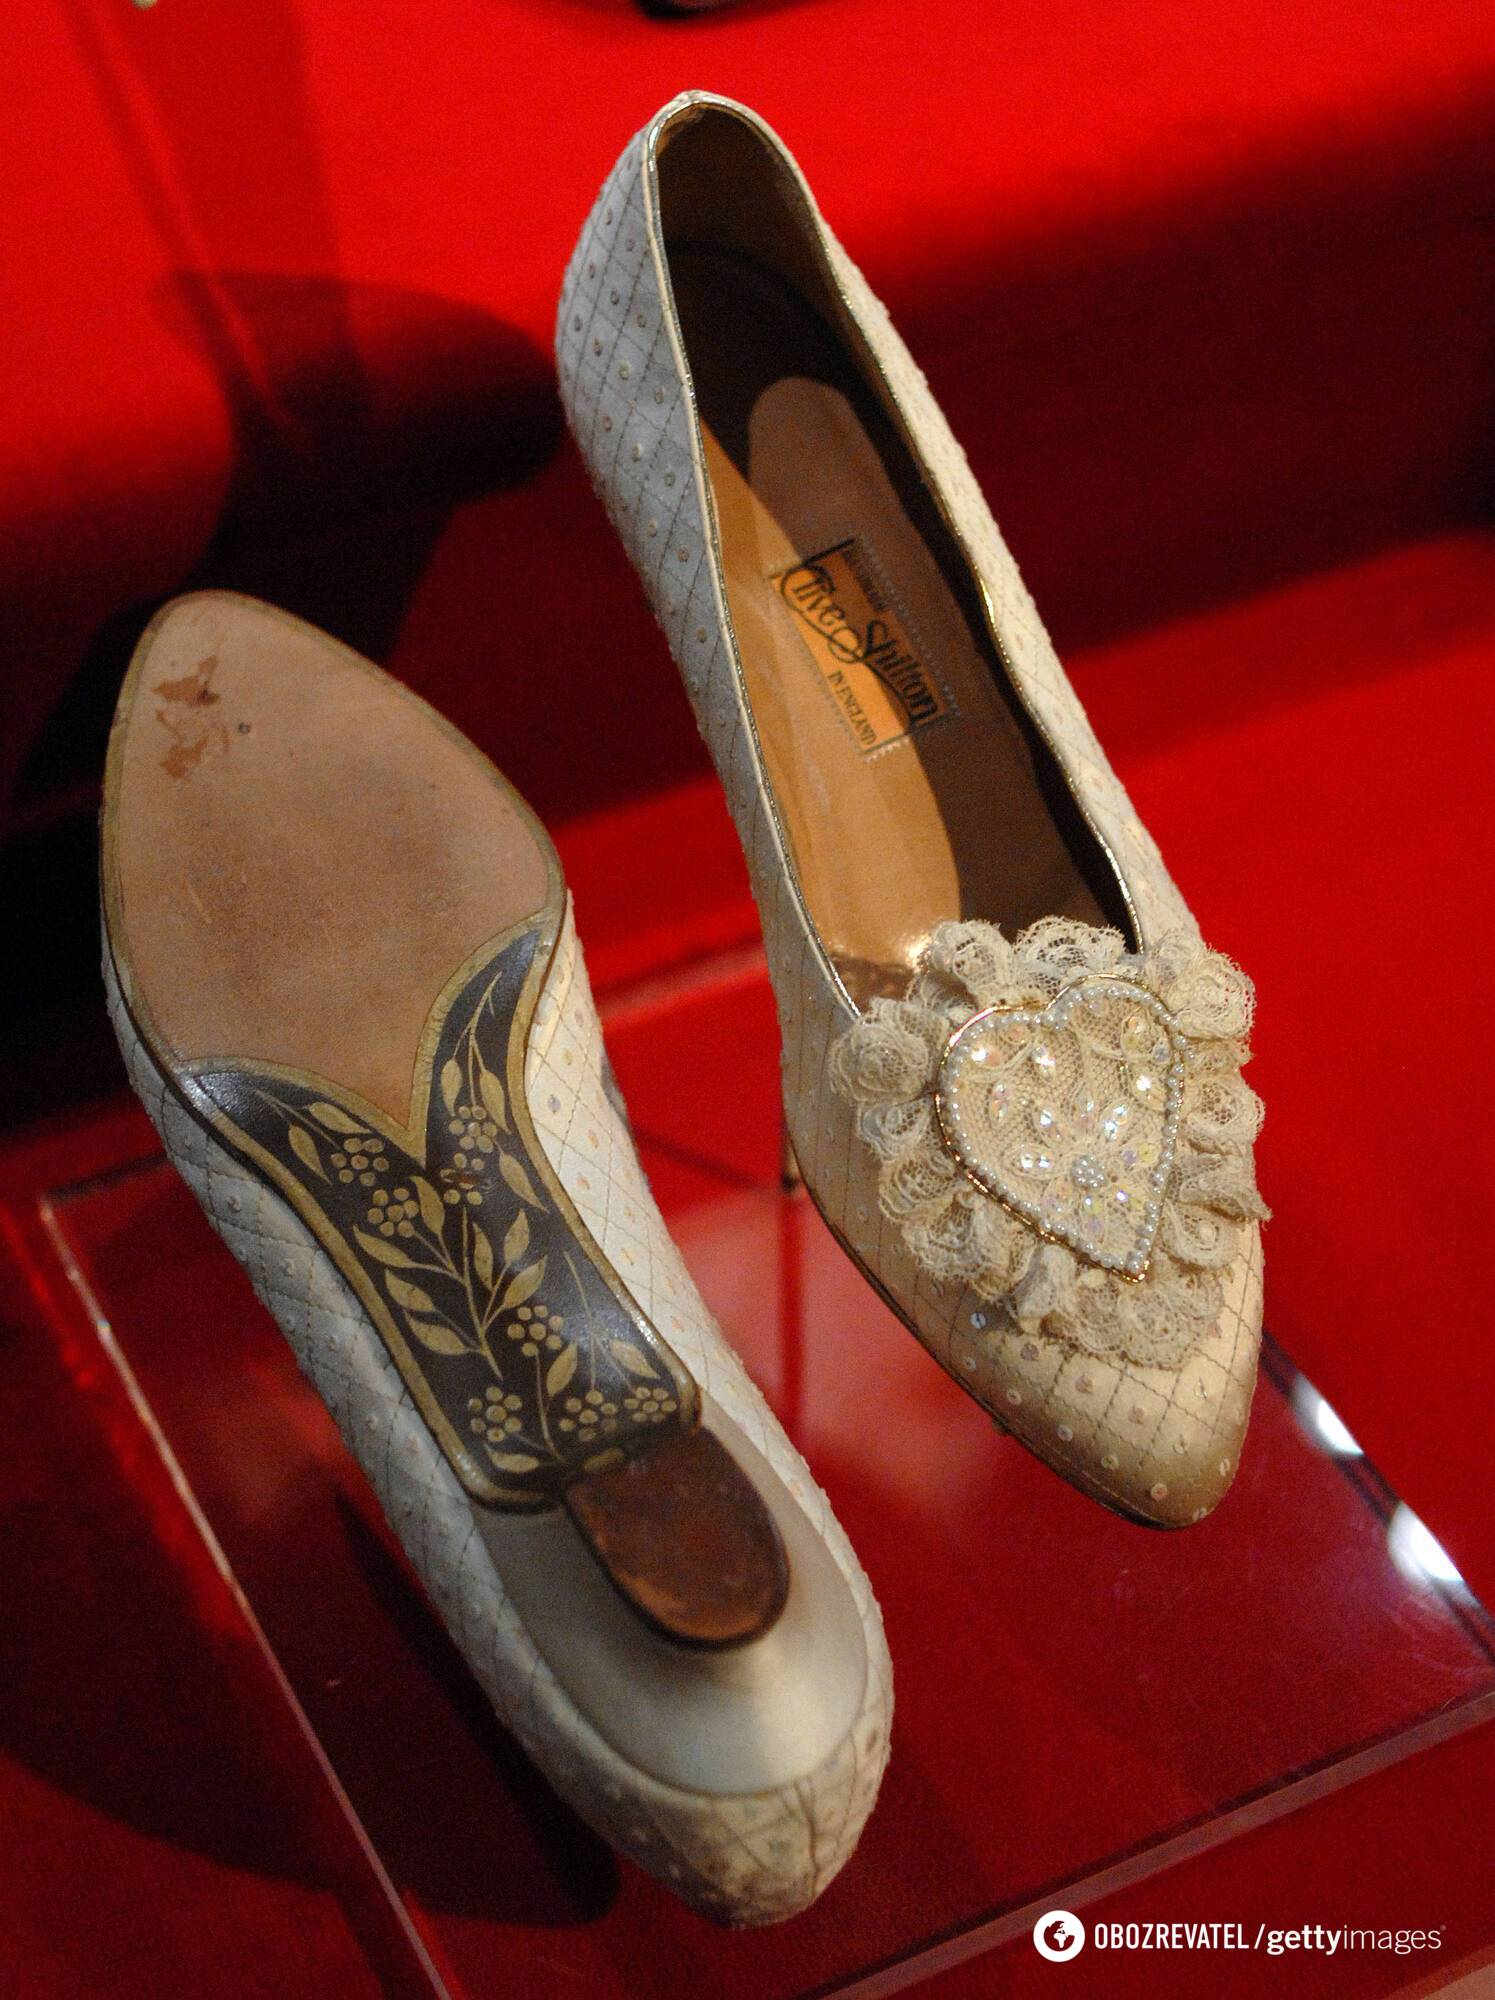 Весільні туфлі принцеси Діани